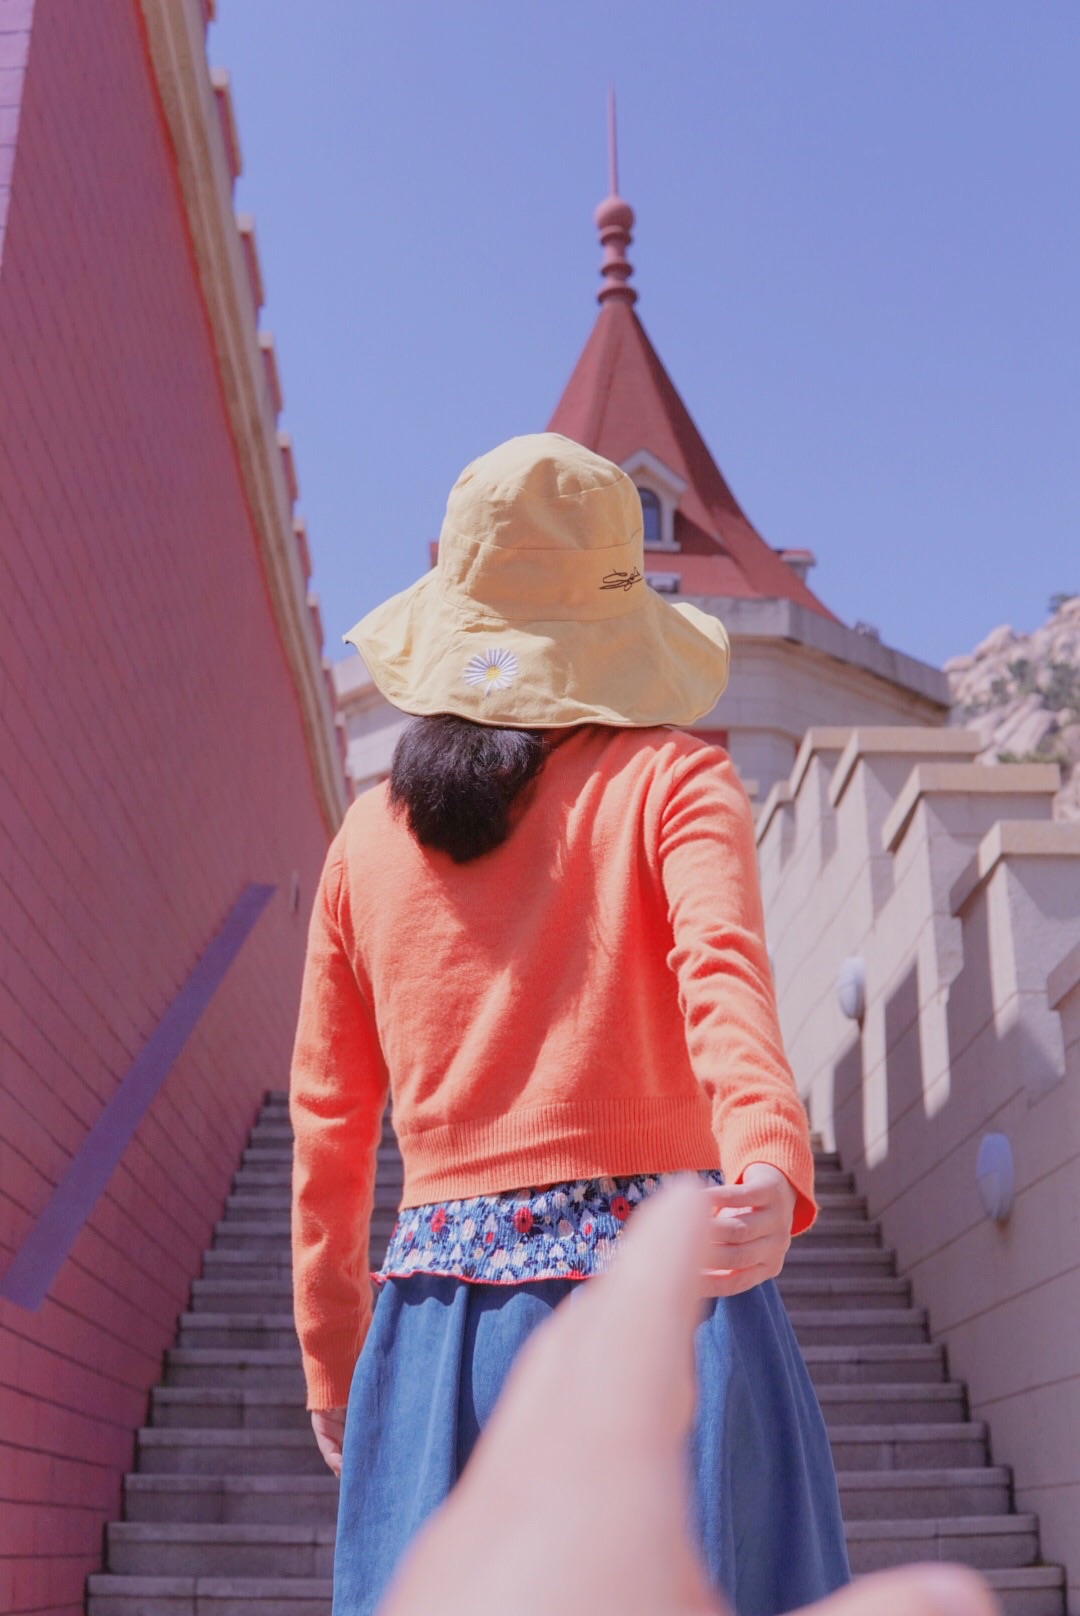 少女心炸裂的粉色城堡——青岛电影博物馆(影都)